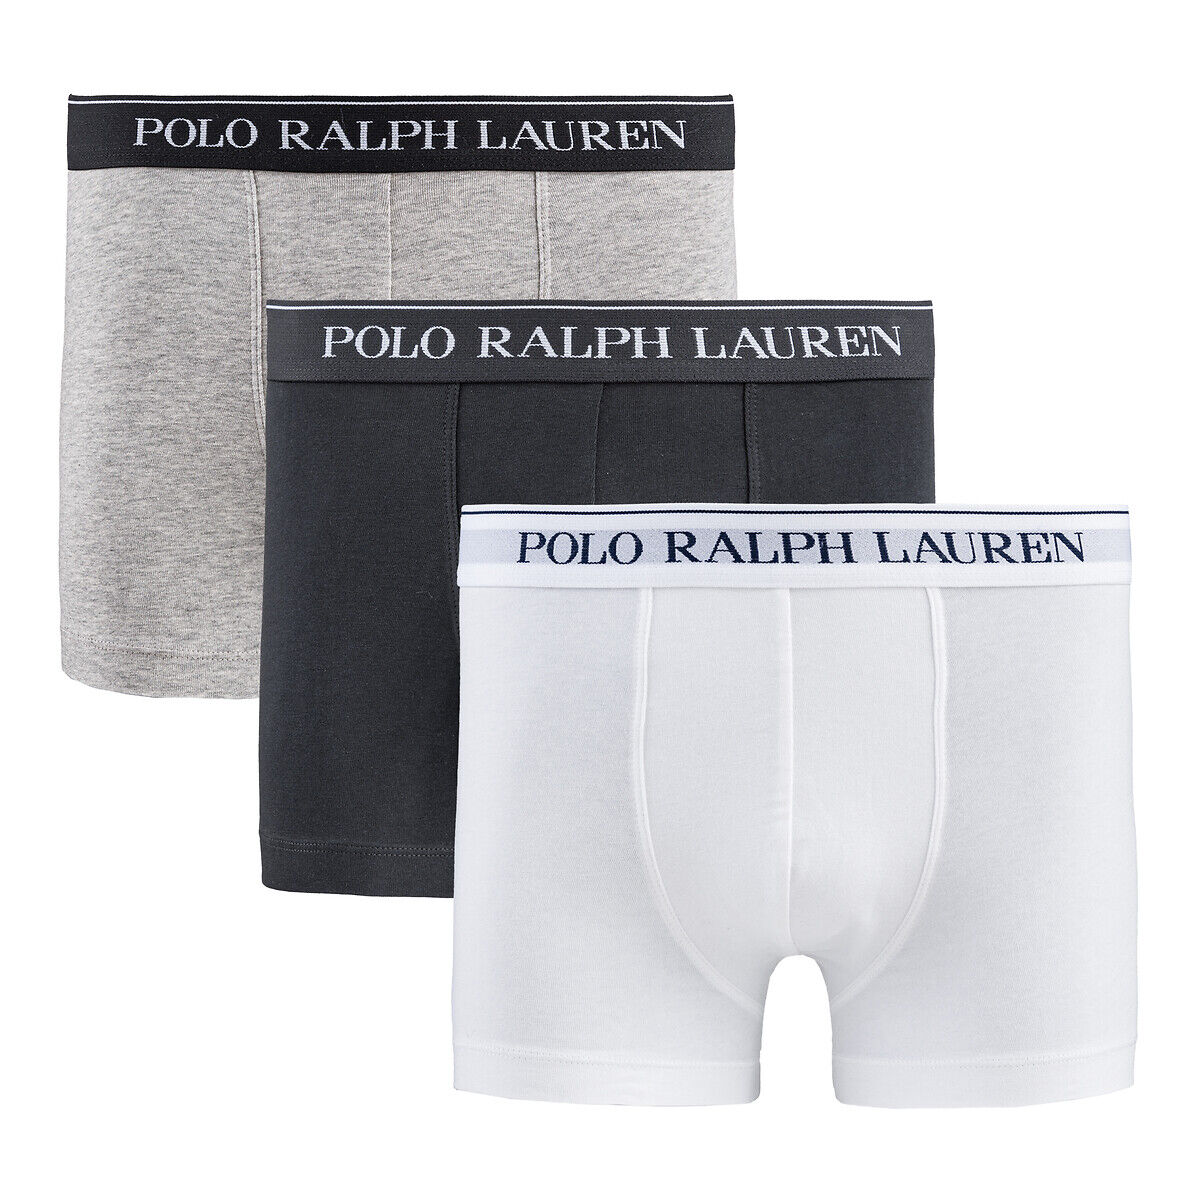 Polo Ralph Lauren Lote de 3 boxers lisos, clássicos   Preto + Cinza Mesclado + Branco